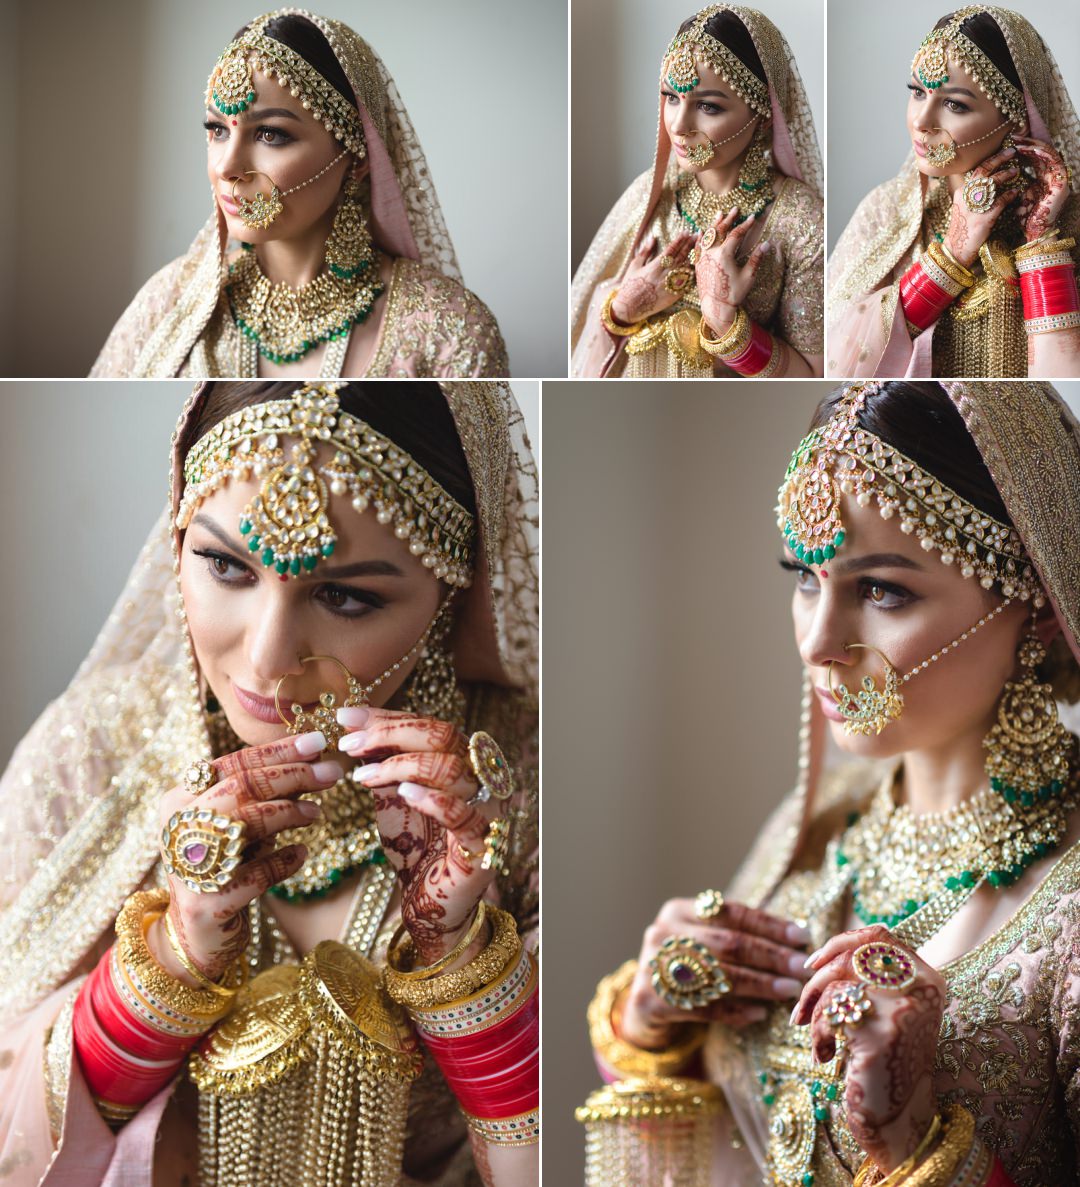 Beautiful Sikh bride at Gravesend Gurdwara, wearing Sabyasachi